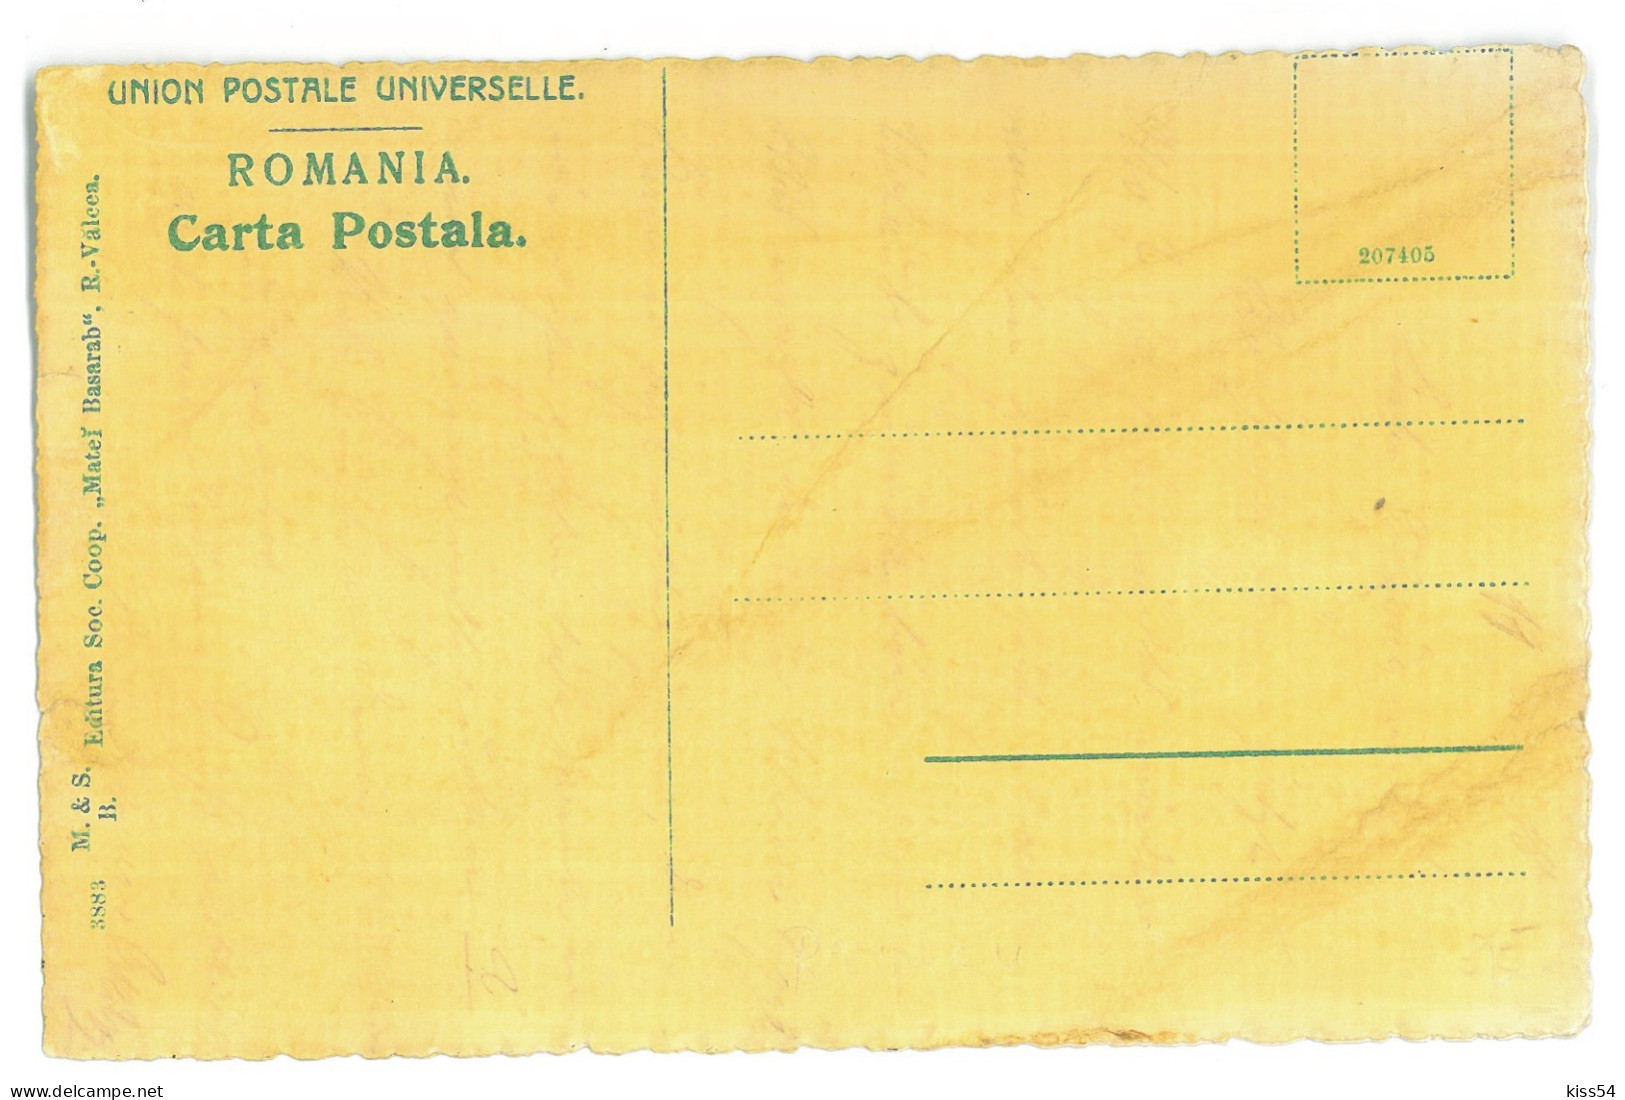 RO 79 - 22579 Rm. VALCEA, Lahovari High School, Romania - Old Postcard - Unused - Romania